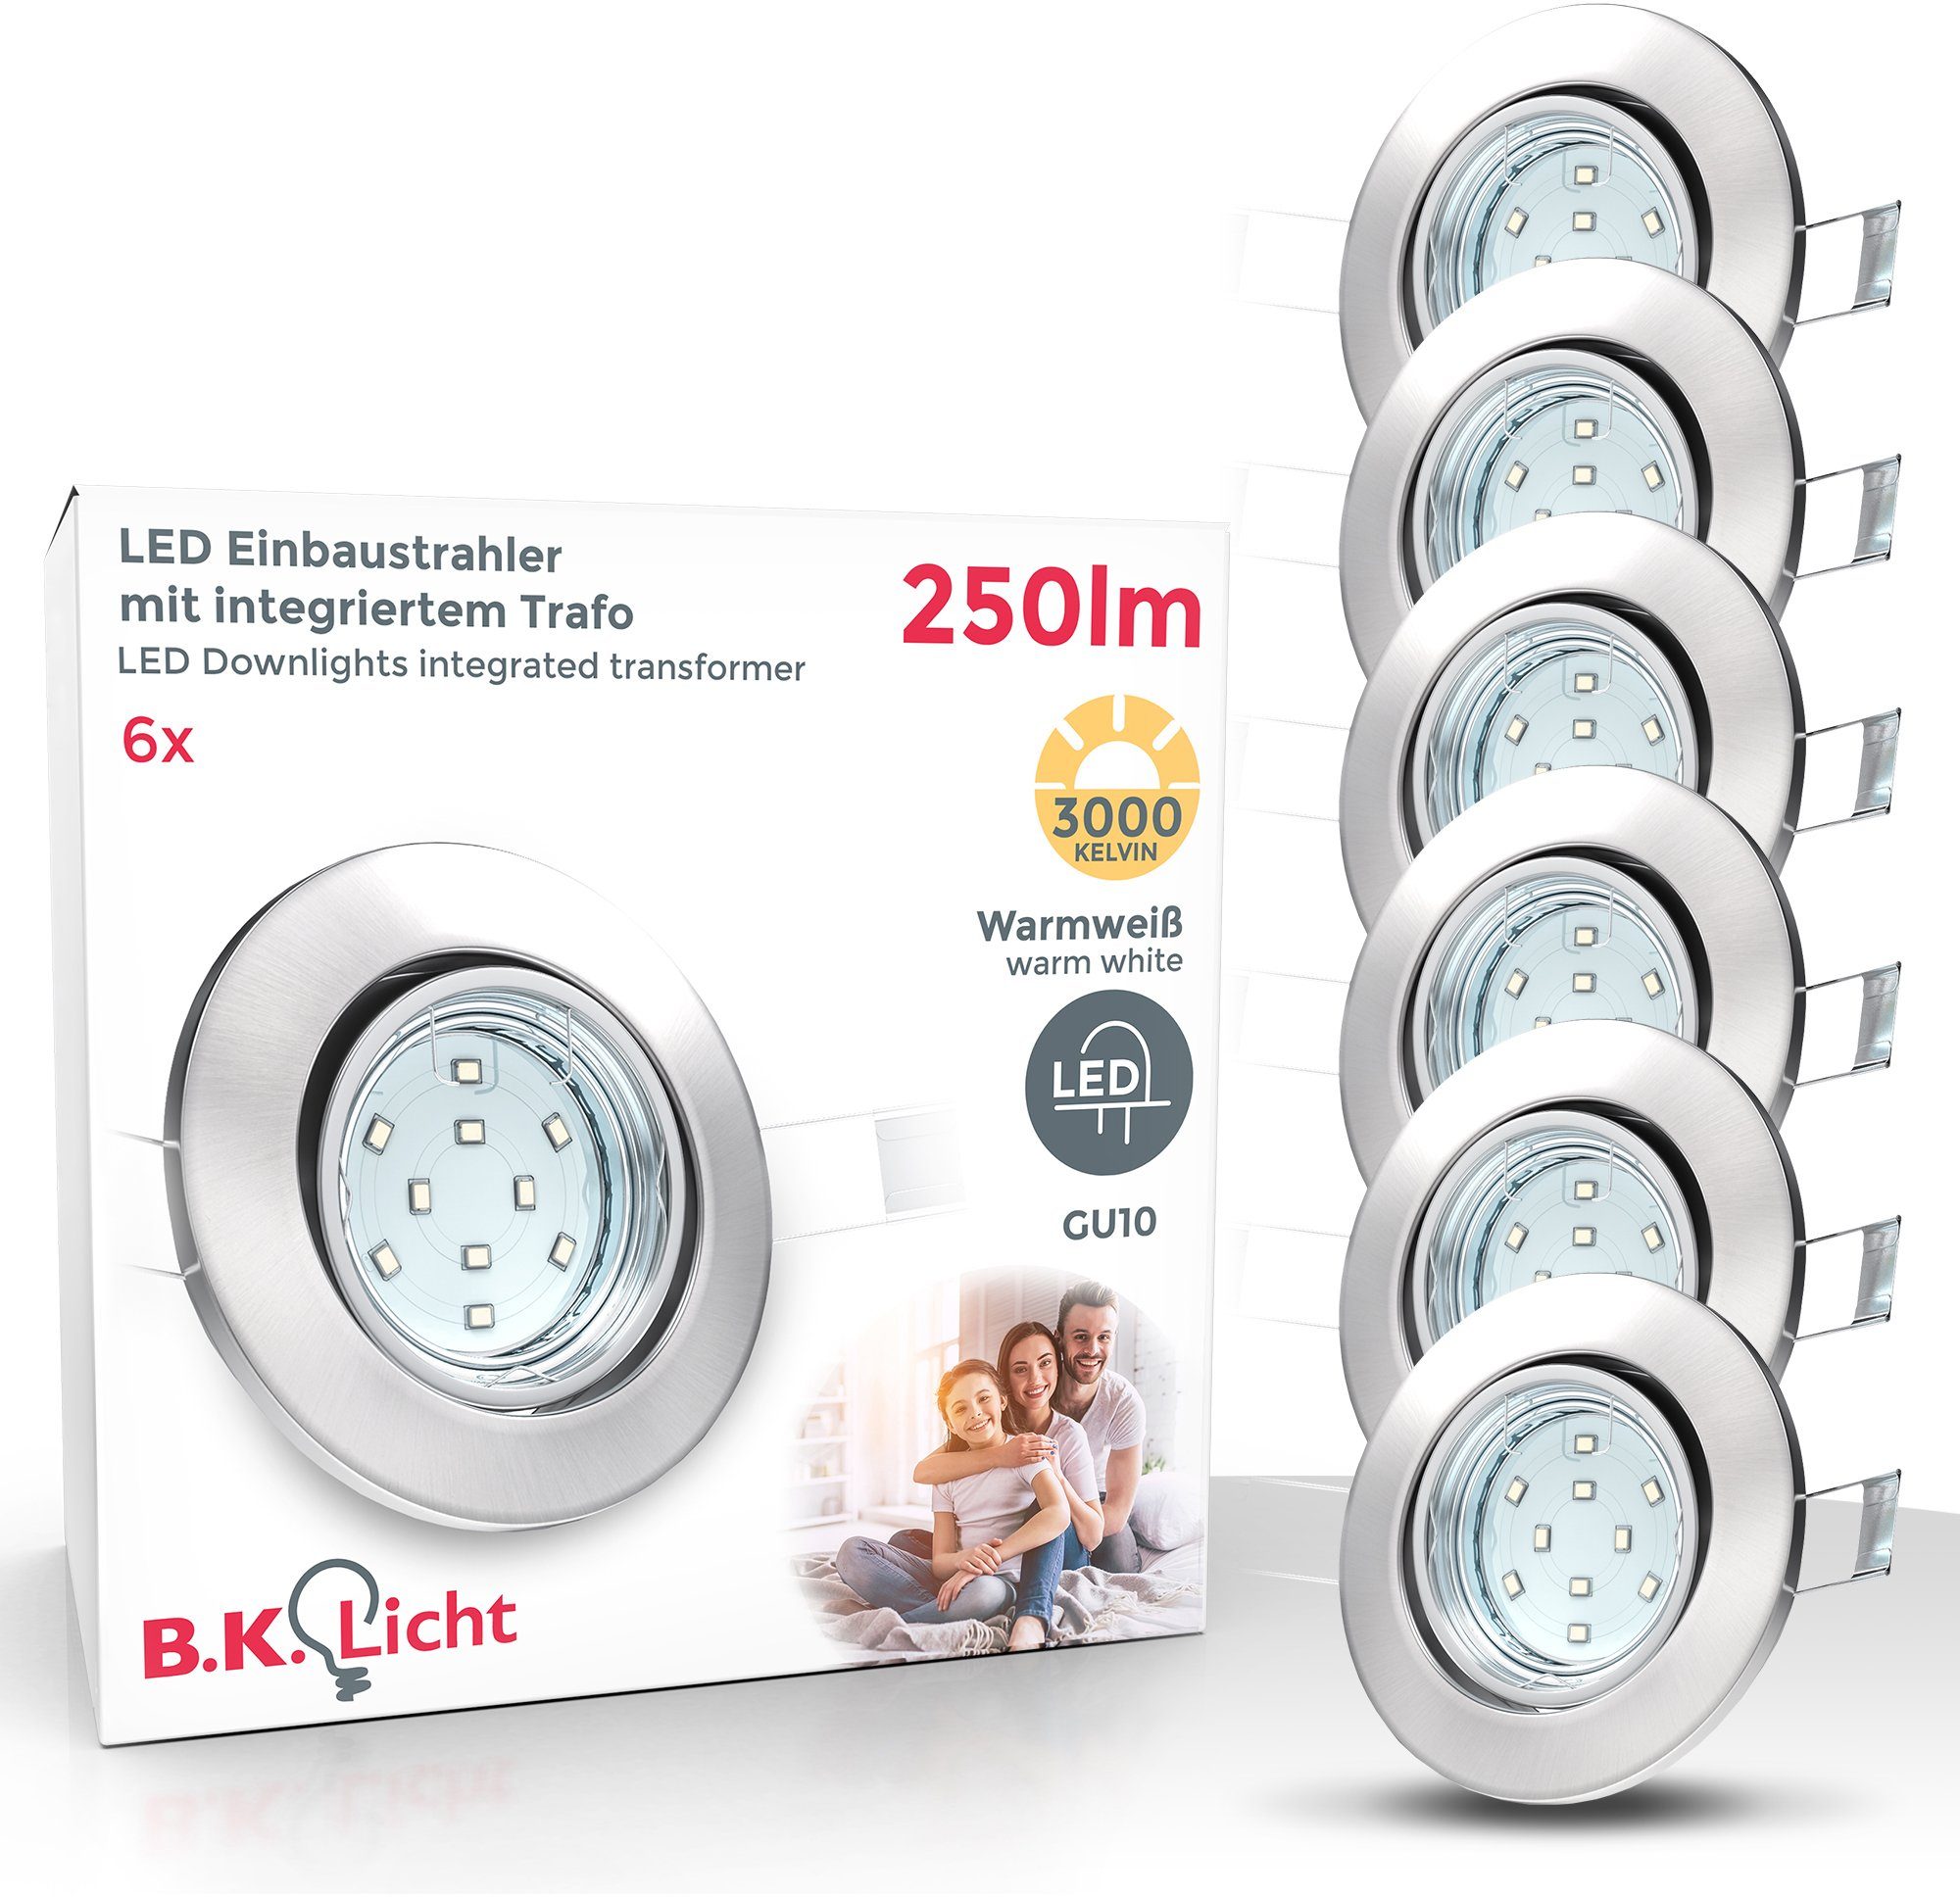 B.K.Licht LED Einbauleuchte Leuchtmittel GU10 Warmweiß, Lumen inkl. schwenkbar wechselbar, SET 250 6er Hila, 3.000K 3W Einbaustrahler LED